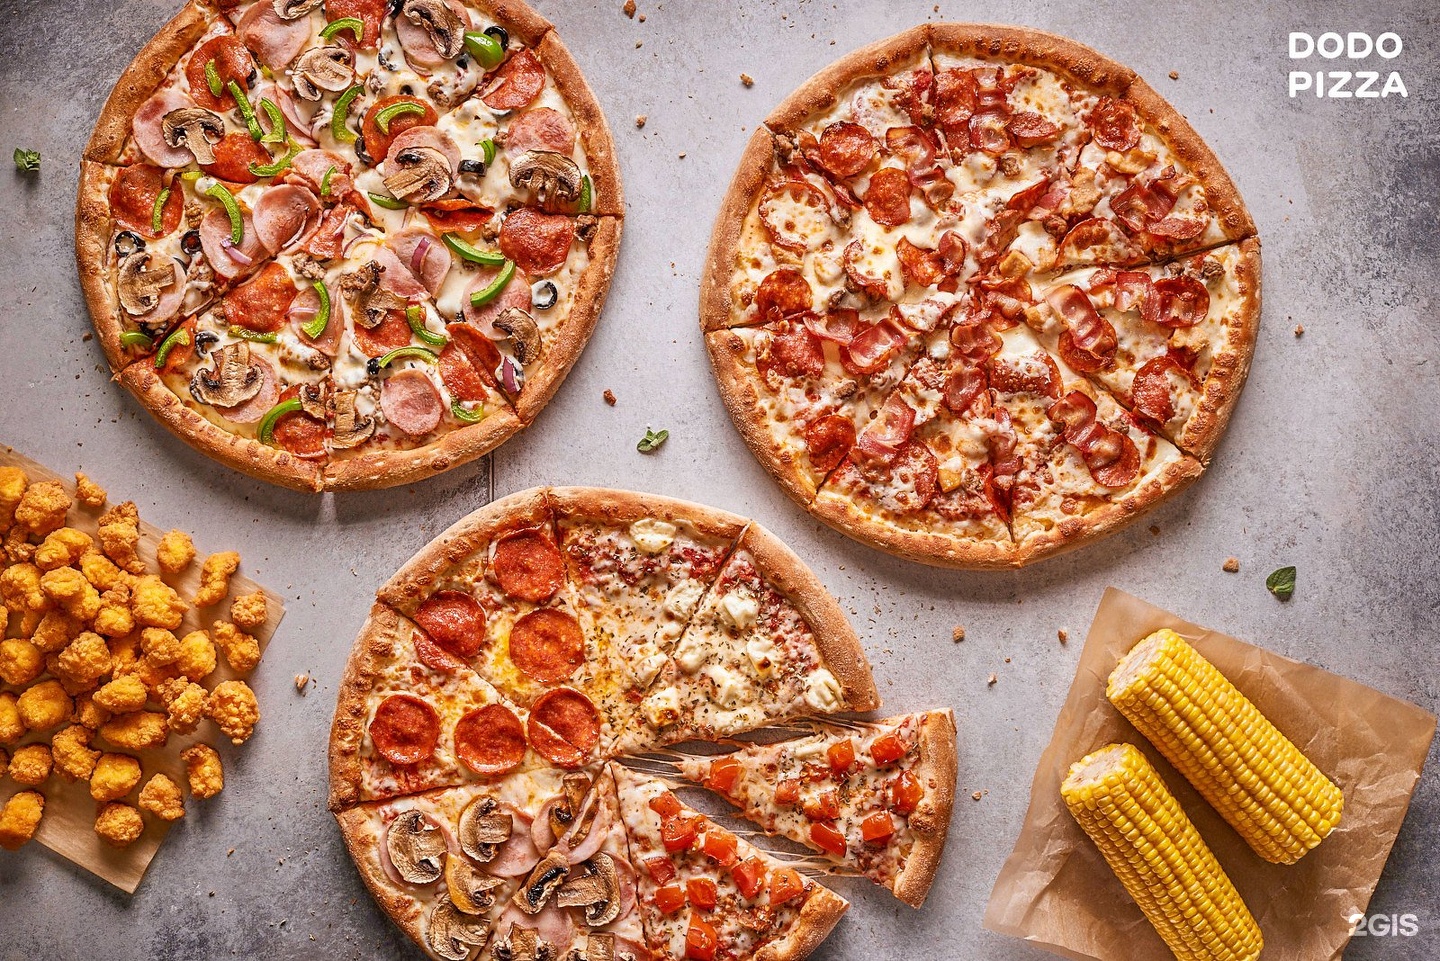 четыре сезона пицца додо какие пиццы фото 89